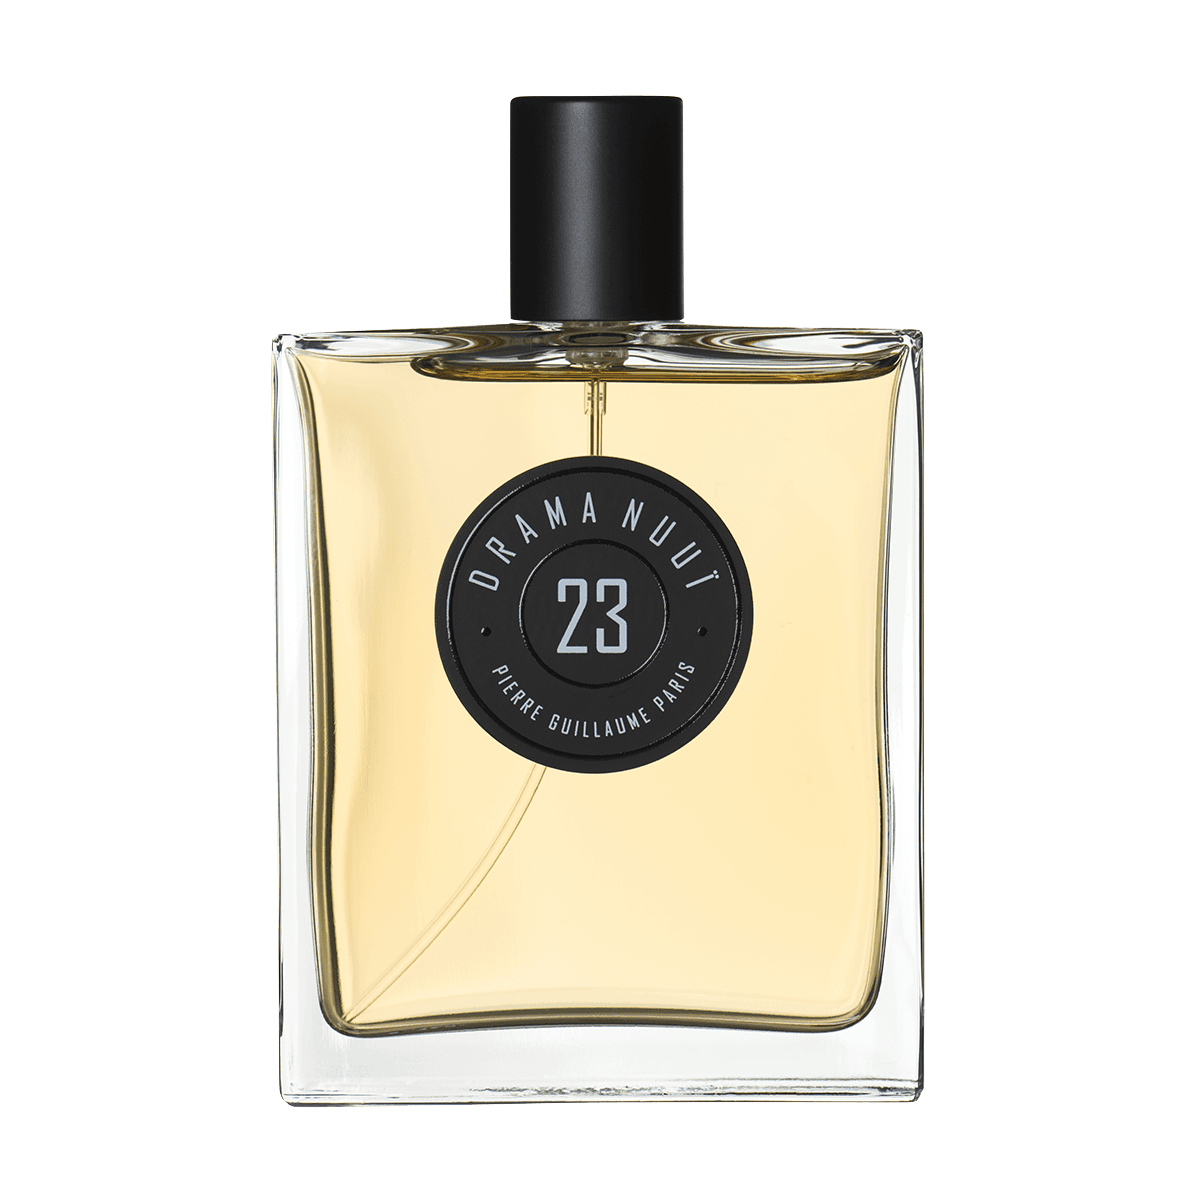 Pierre Guillaume Paris - 23 Drama Nuuie eau de parfum 100 ml | Perfume Lounge